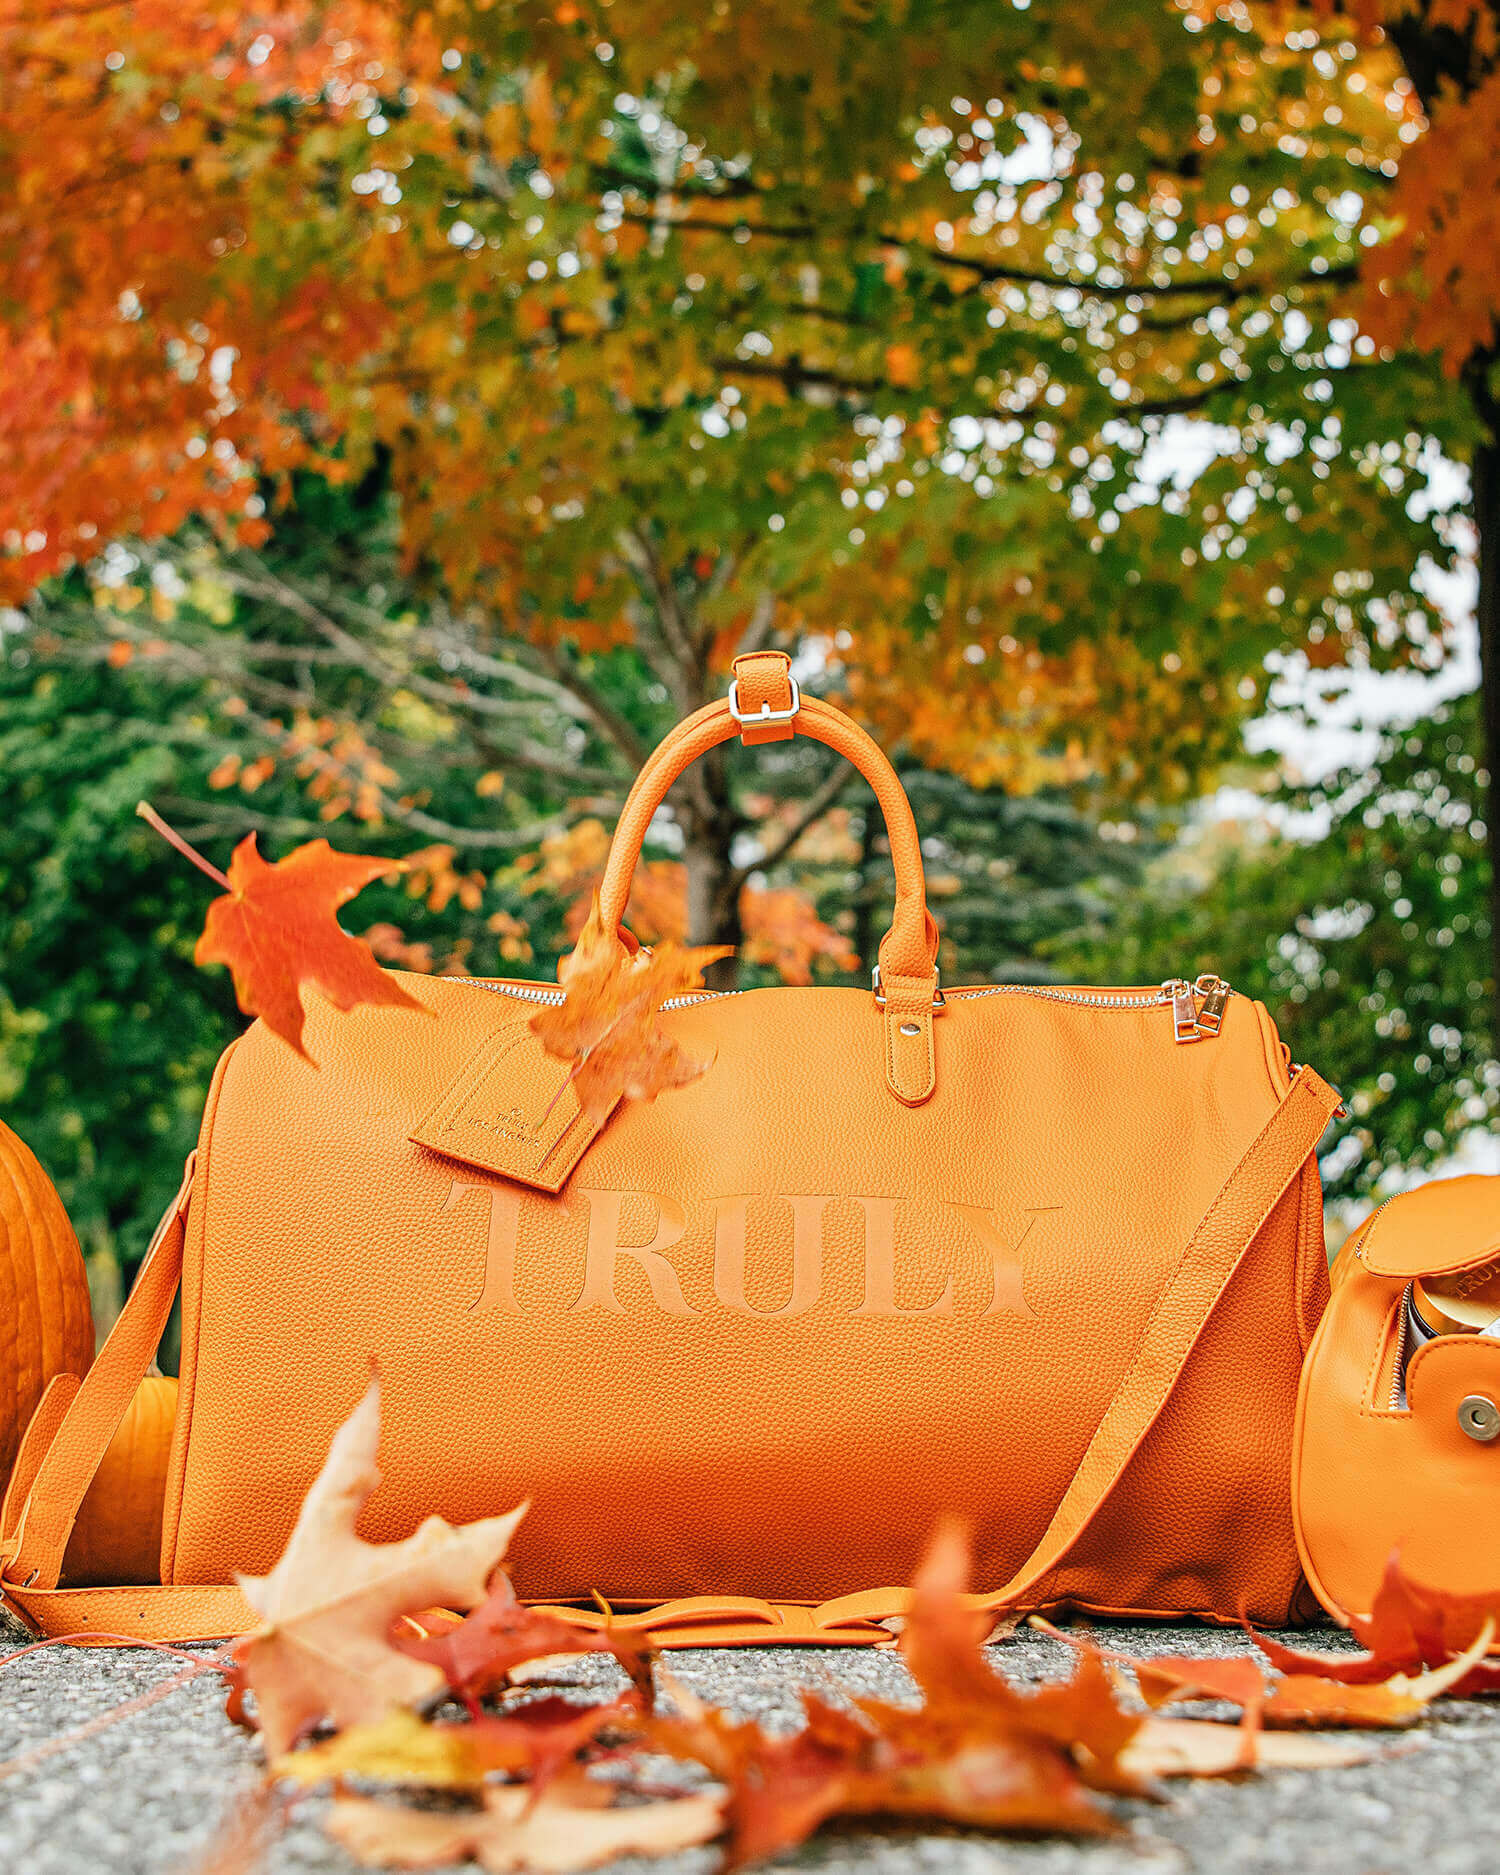 Autumn Maple Leaves Pumpkins Jute Tote Bag India | Ubuy